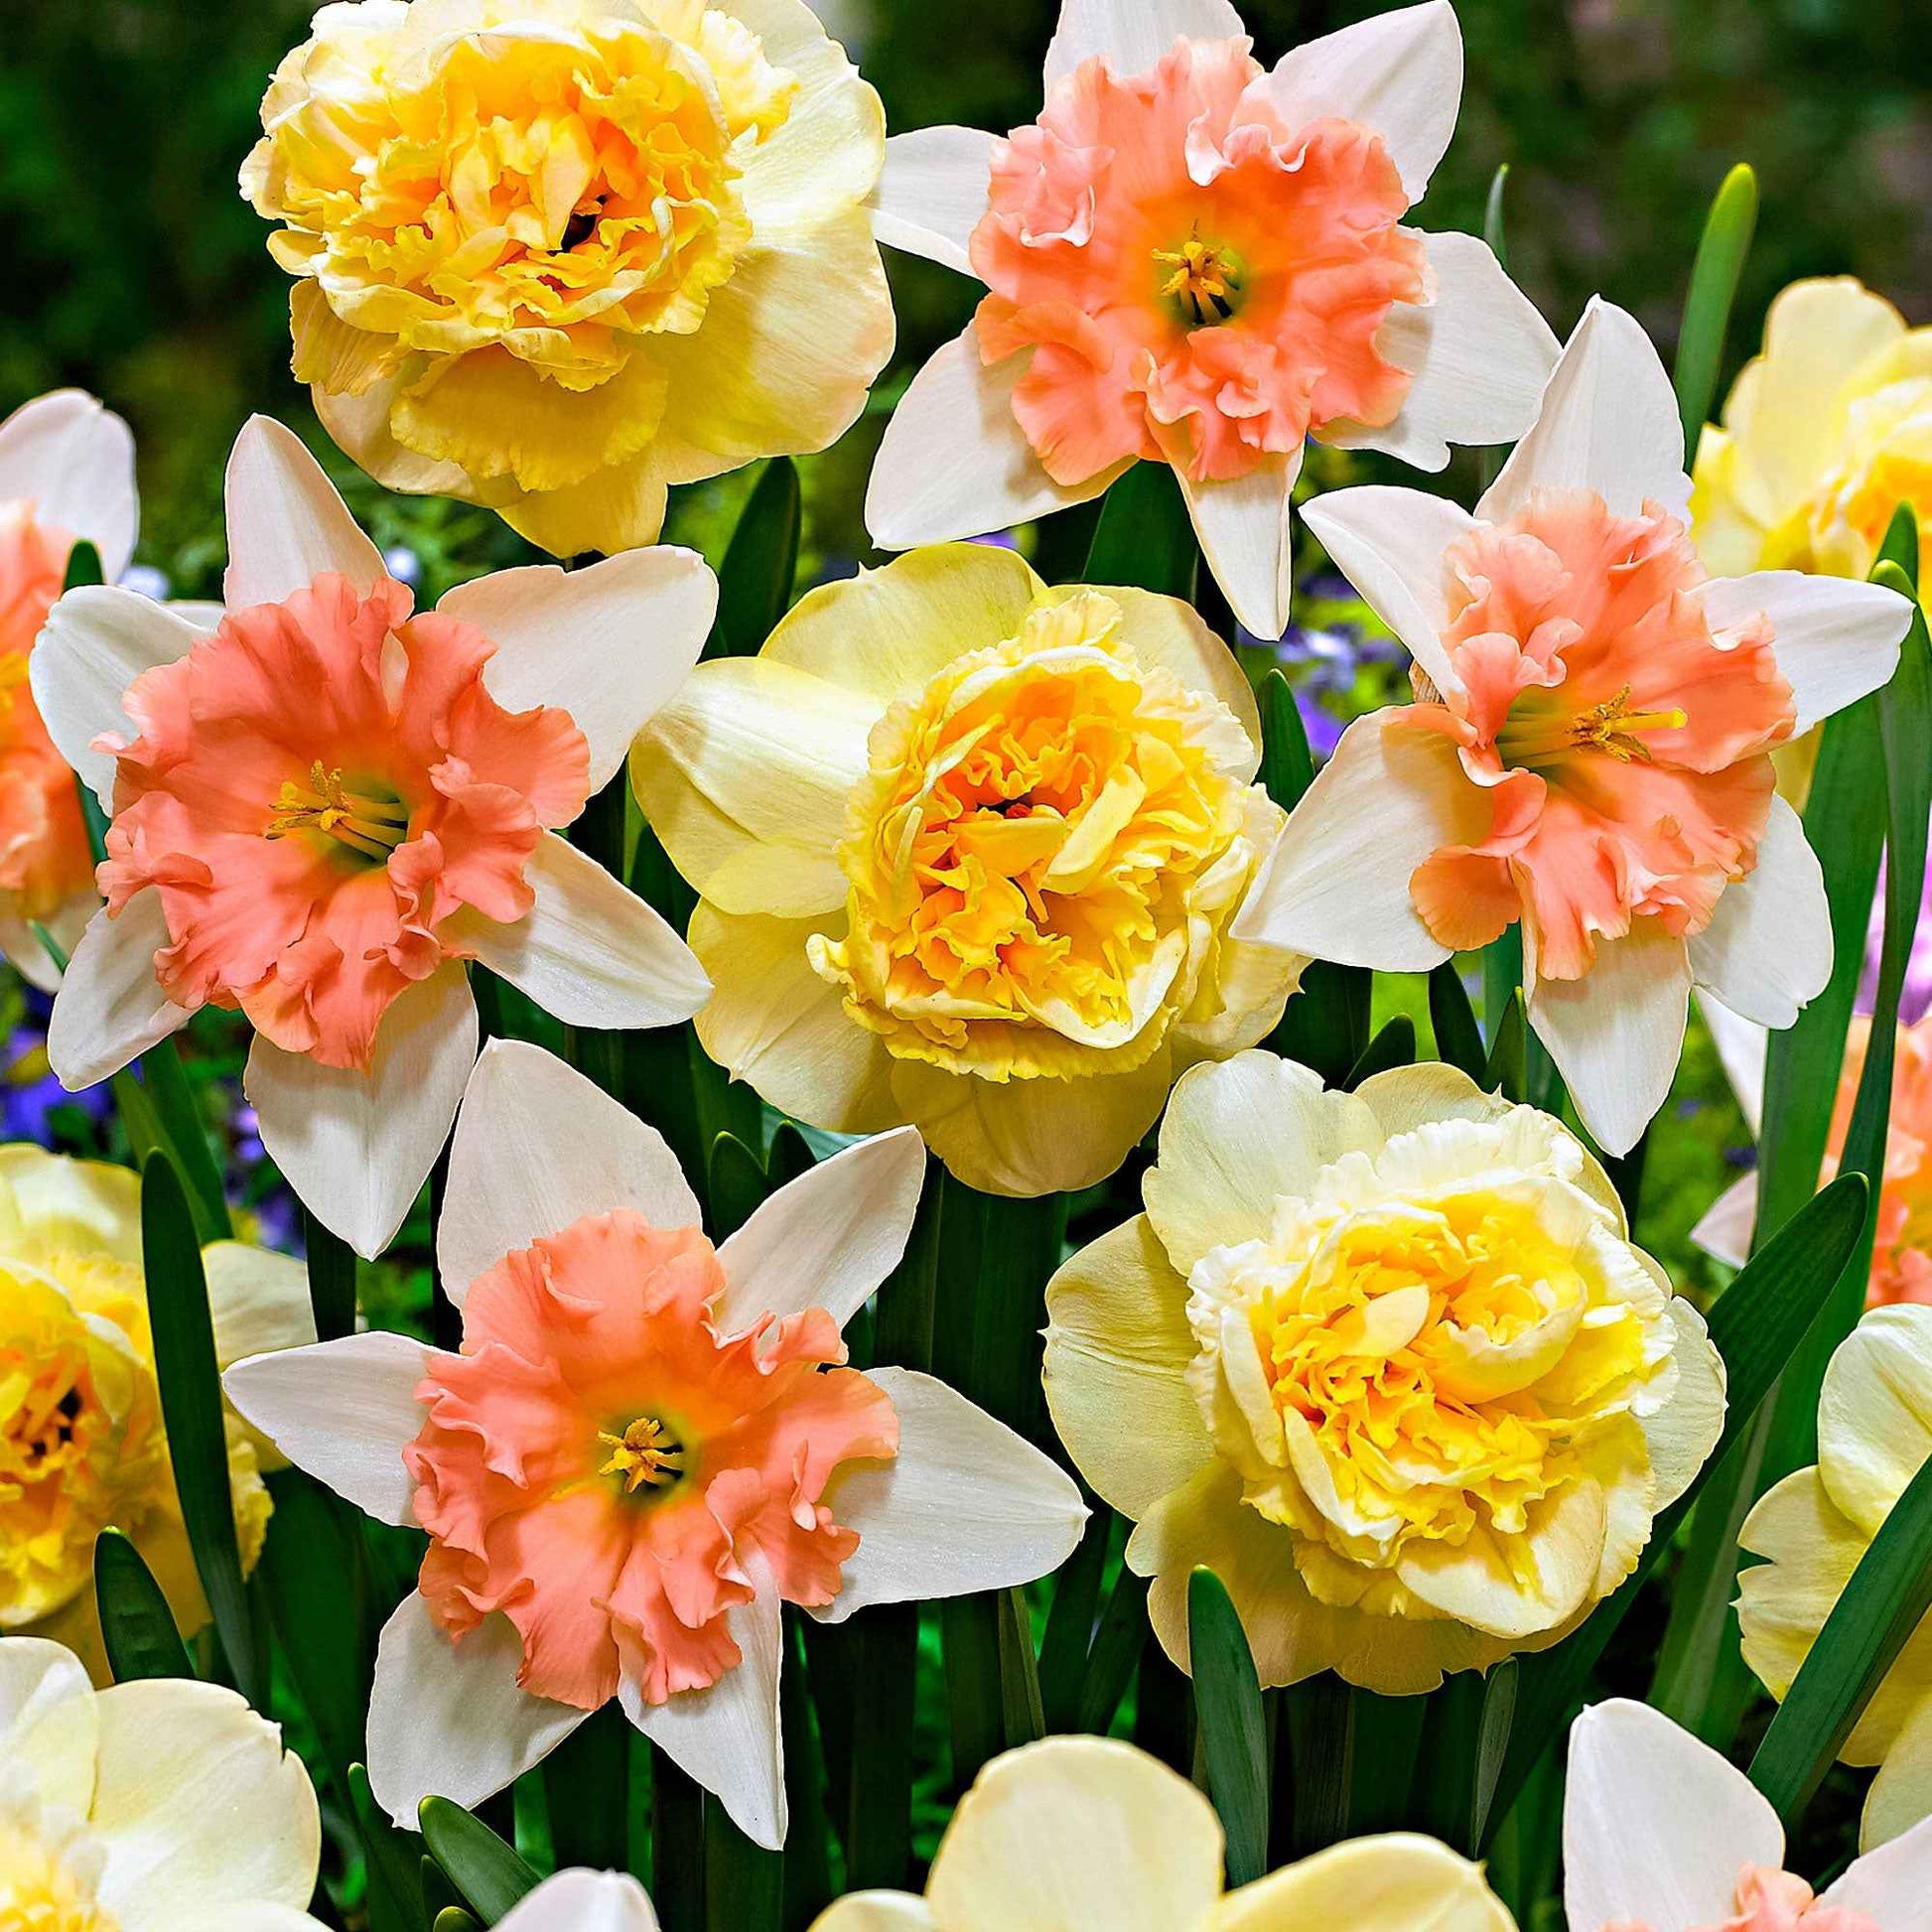 7x Narzissen Narcissus - Mischung ’Art Design’ + ’Dear Love’ gelb-rosa - Alle beliebten Blumenzwiebeln